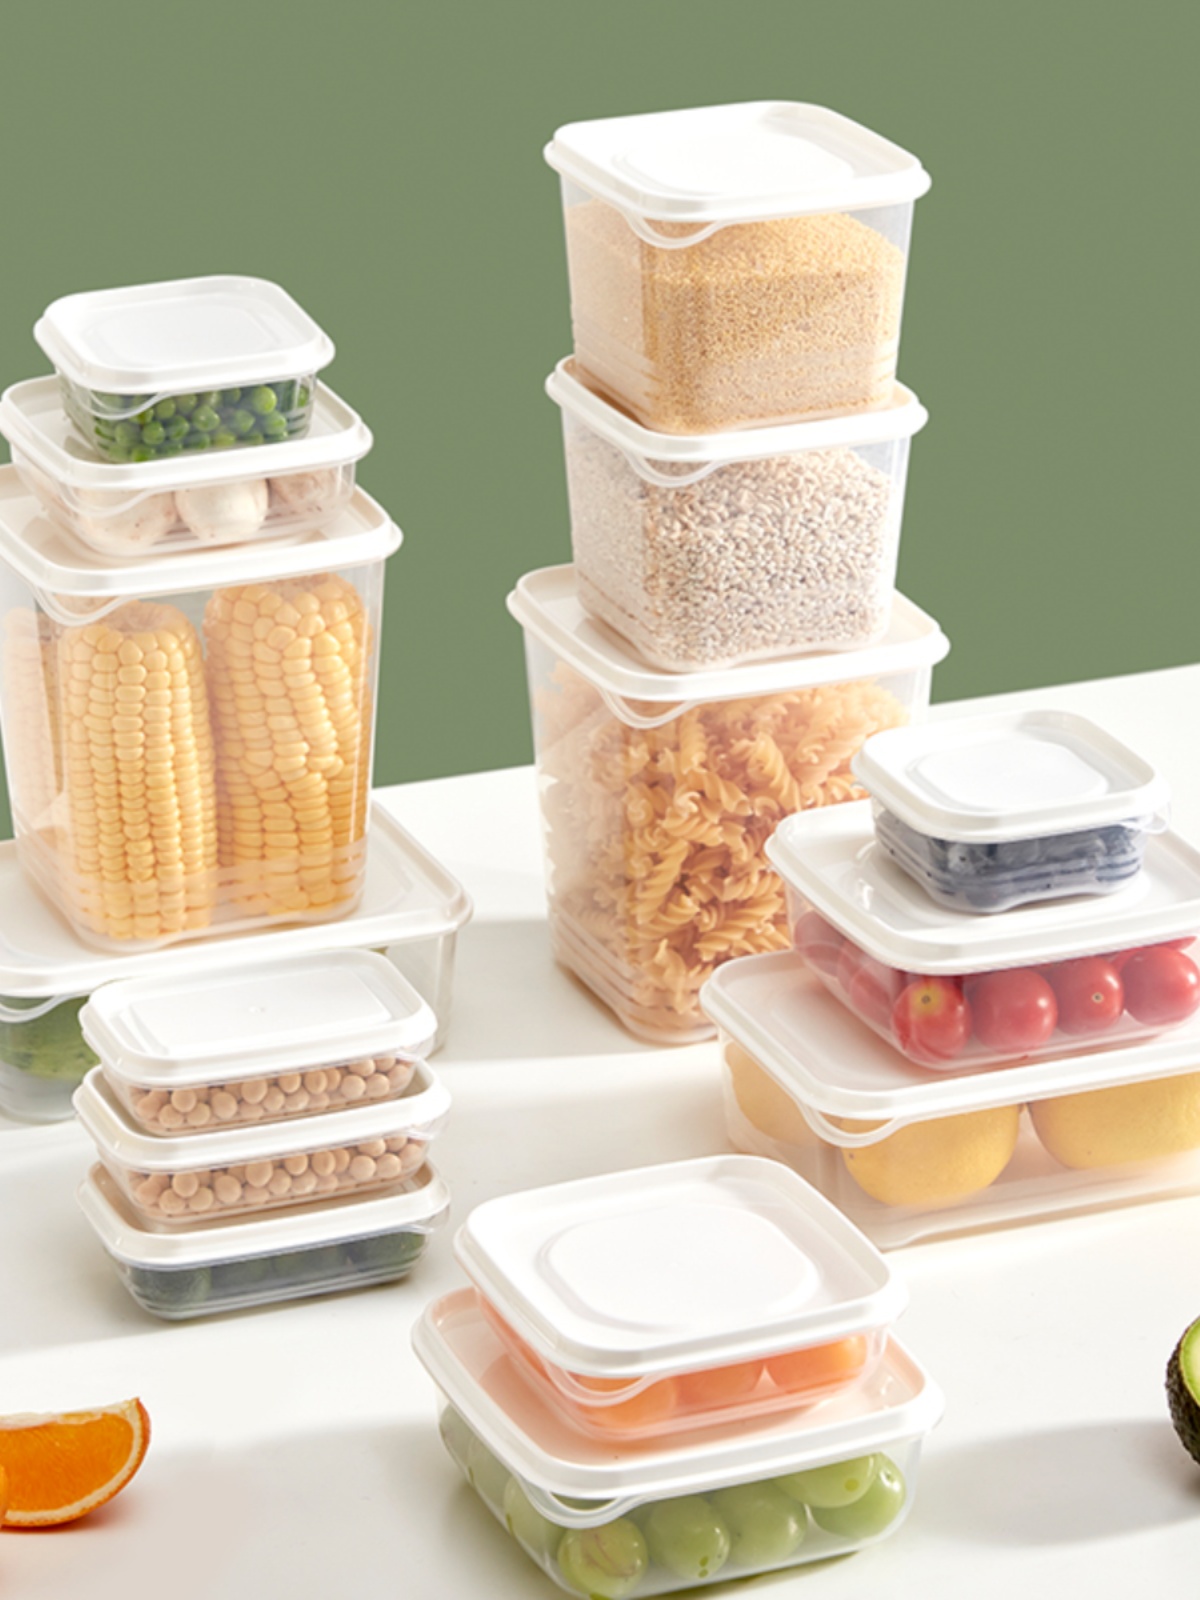 網易嚴選保鮮盒 食品級 冰箱收納盒 冷凍蔬菜水果密封盒 塑料便當盒 超值15件套裝